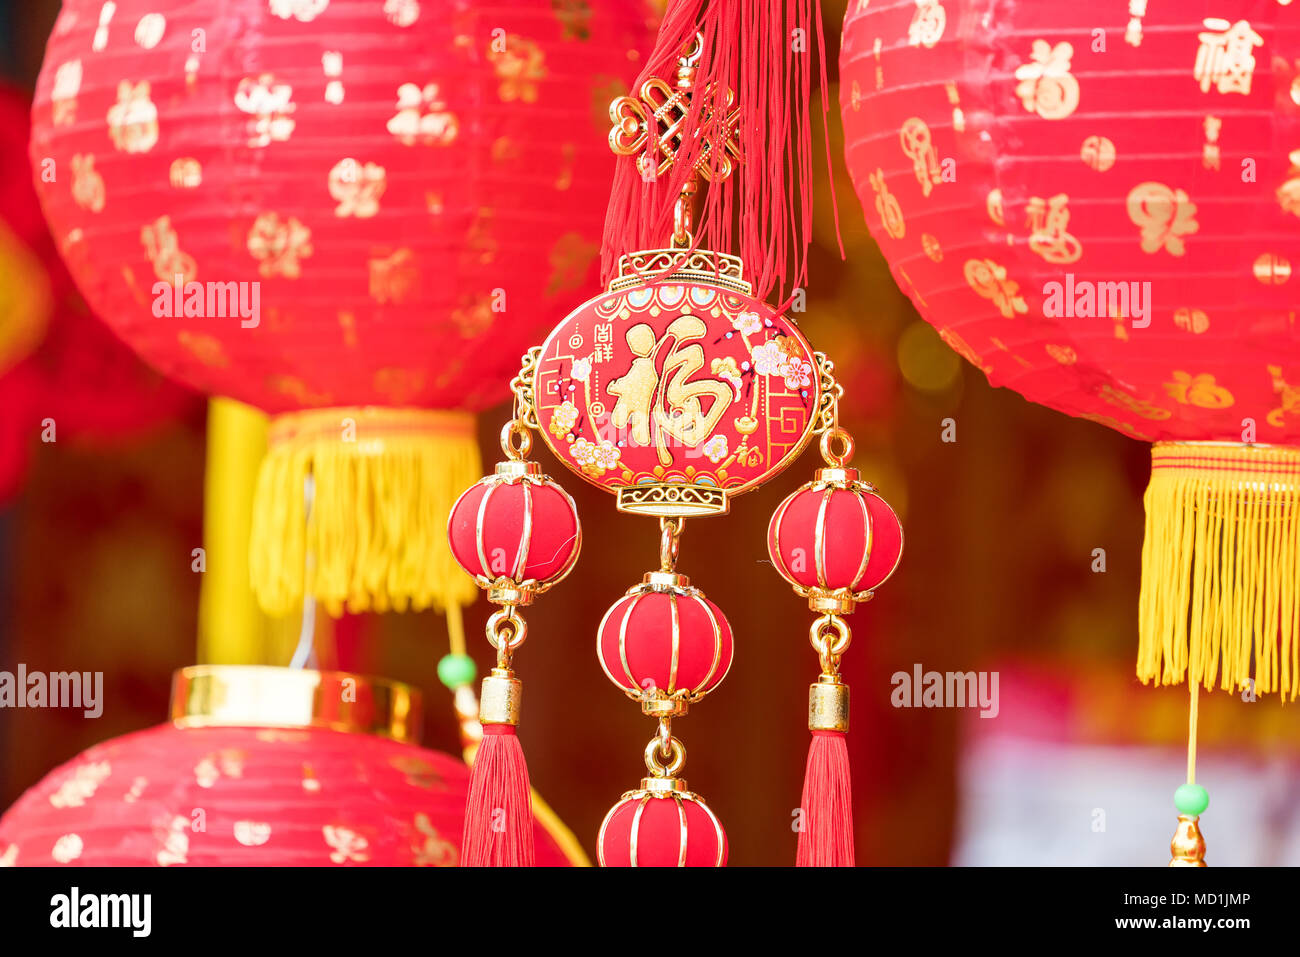 Lanternes rouges pour la décoration du nouvel an chinois Banque D'Images